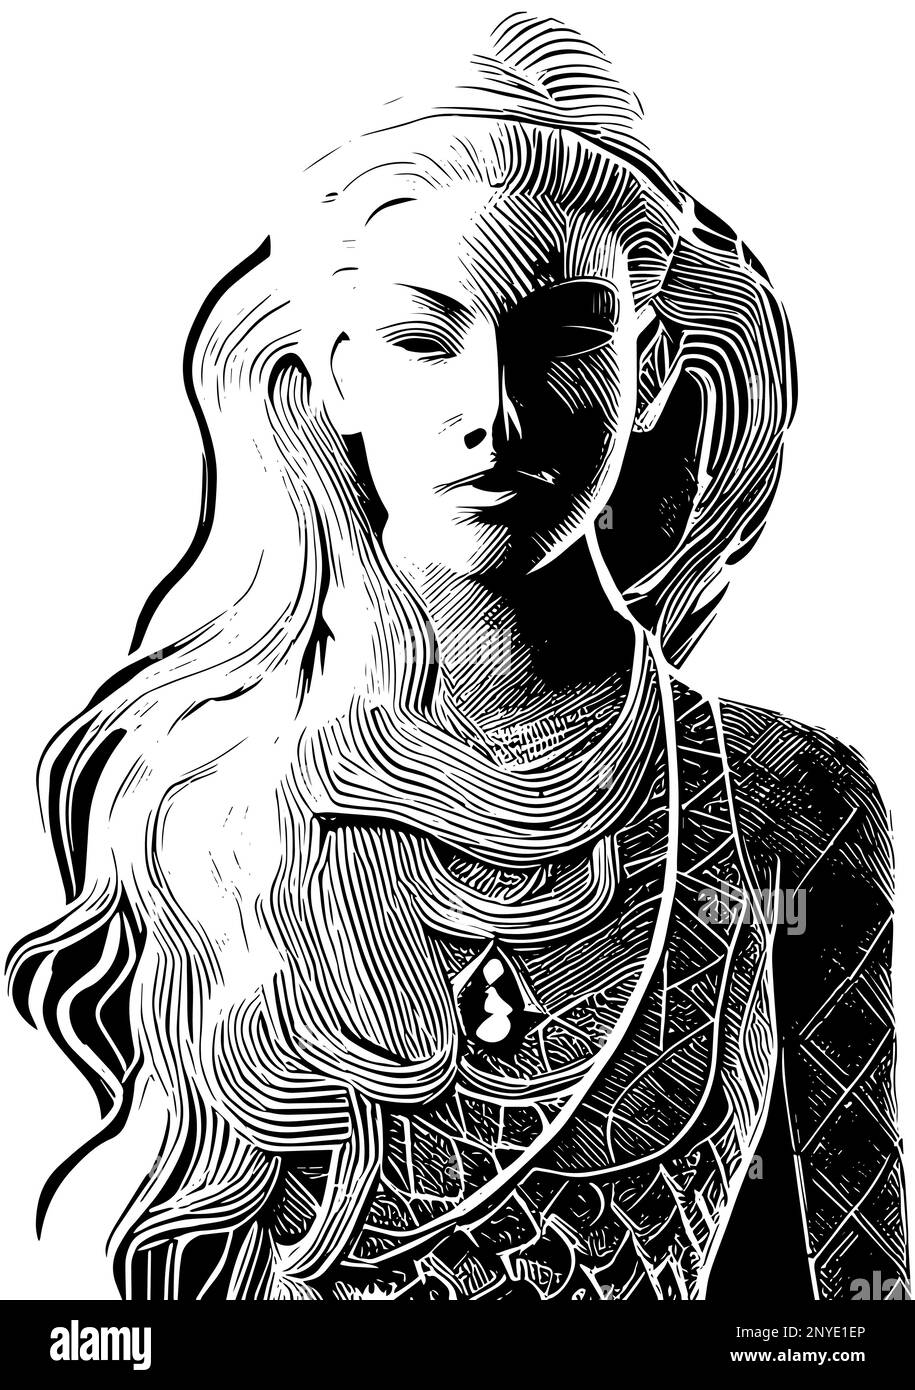 Femme figure dessin vectoriel illustration, jeune fille portrait isolé sur fond blanc dessin artistique avec espace pour le texte Illustration de Vecteur